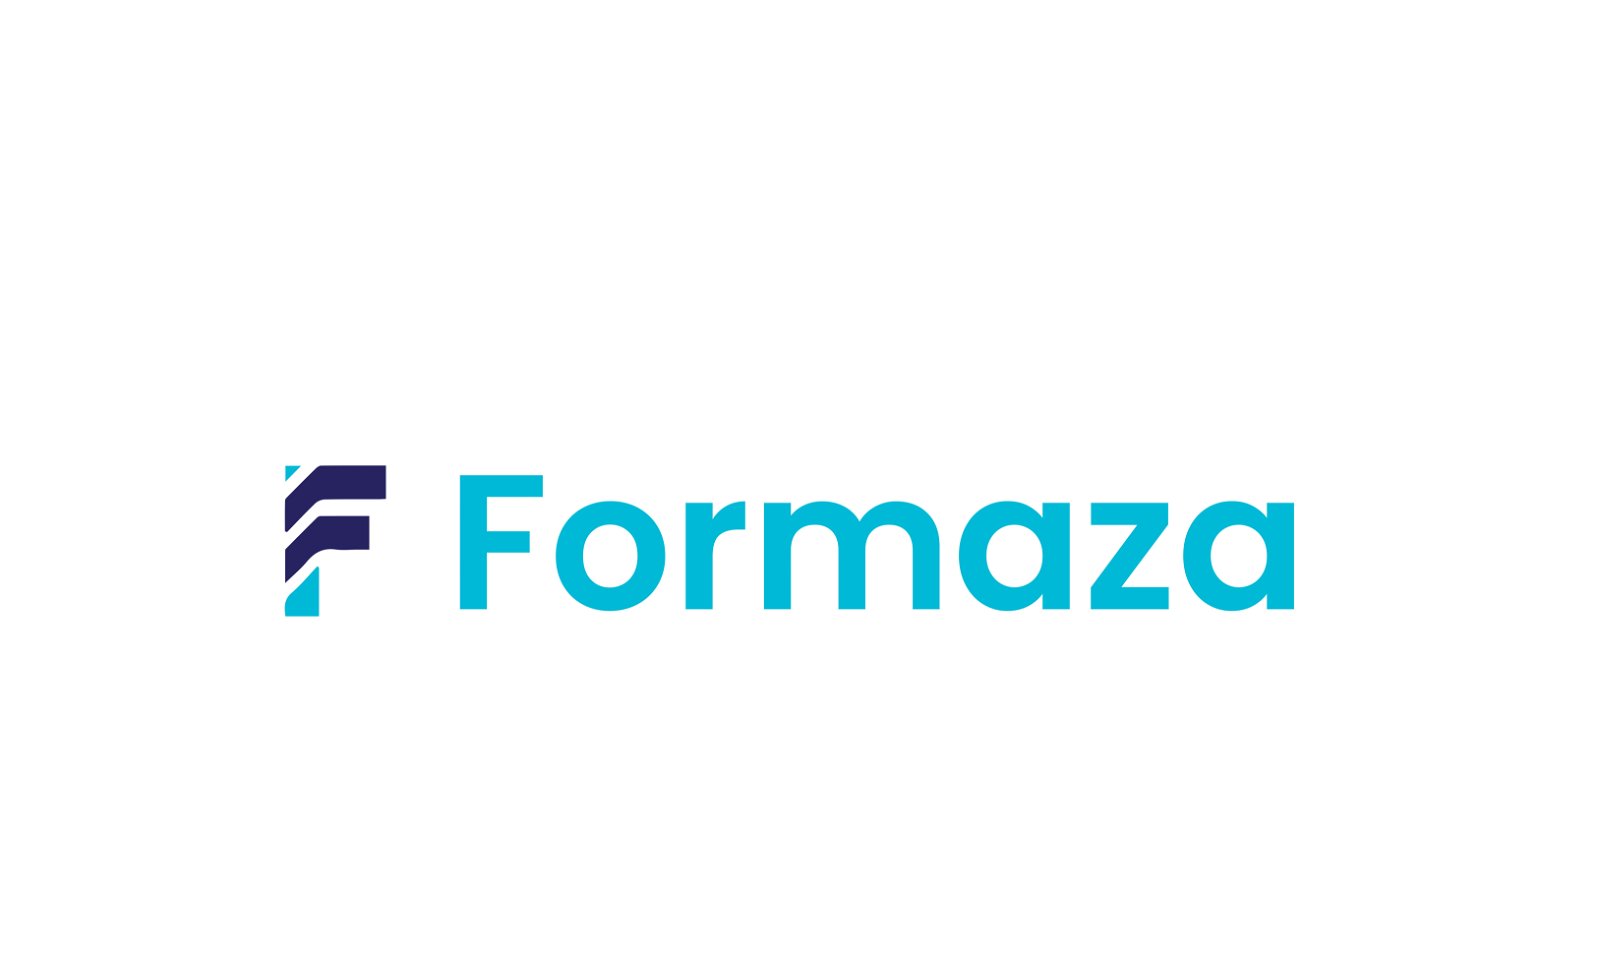 Formaza.com - Creative brandable domain for sale